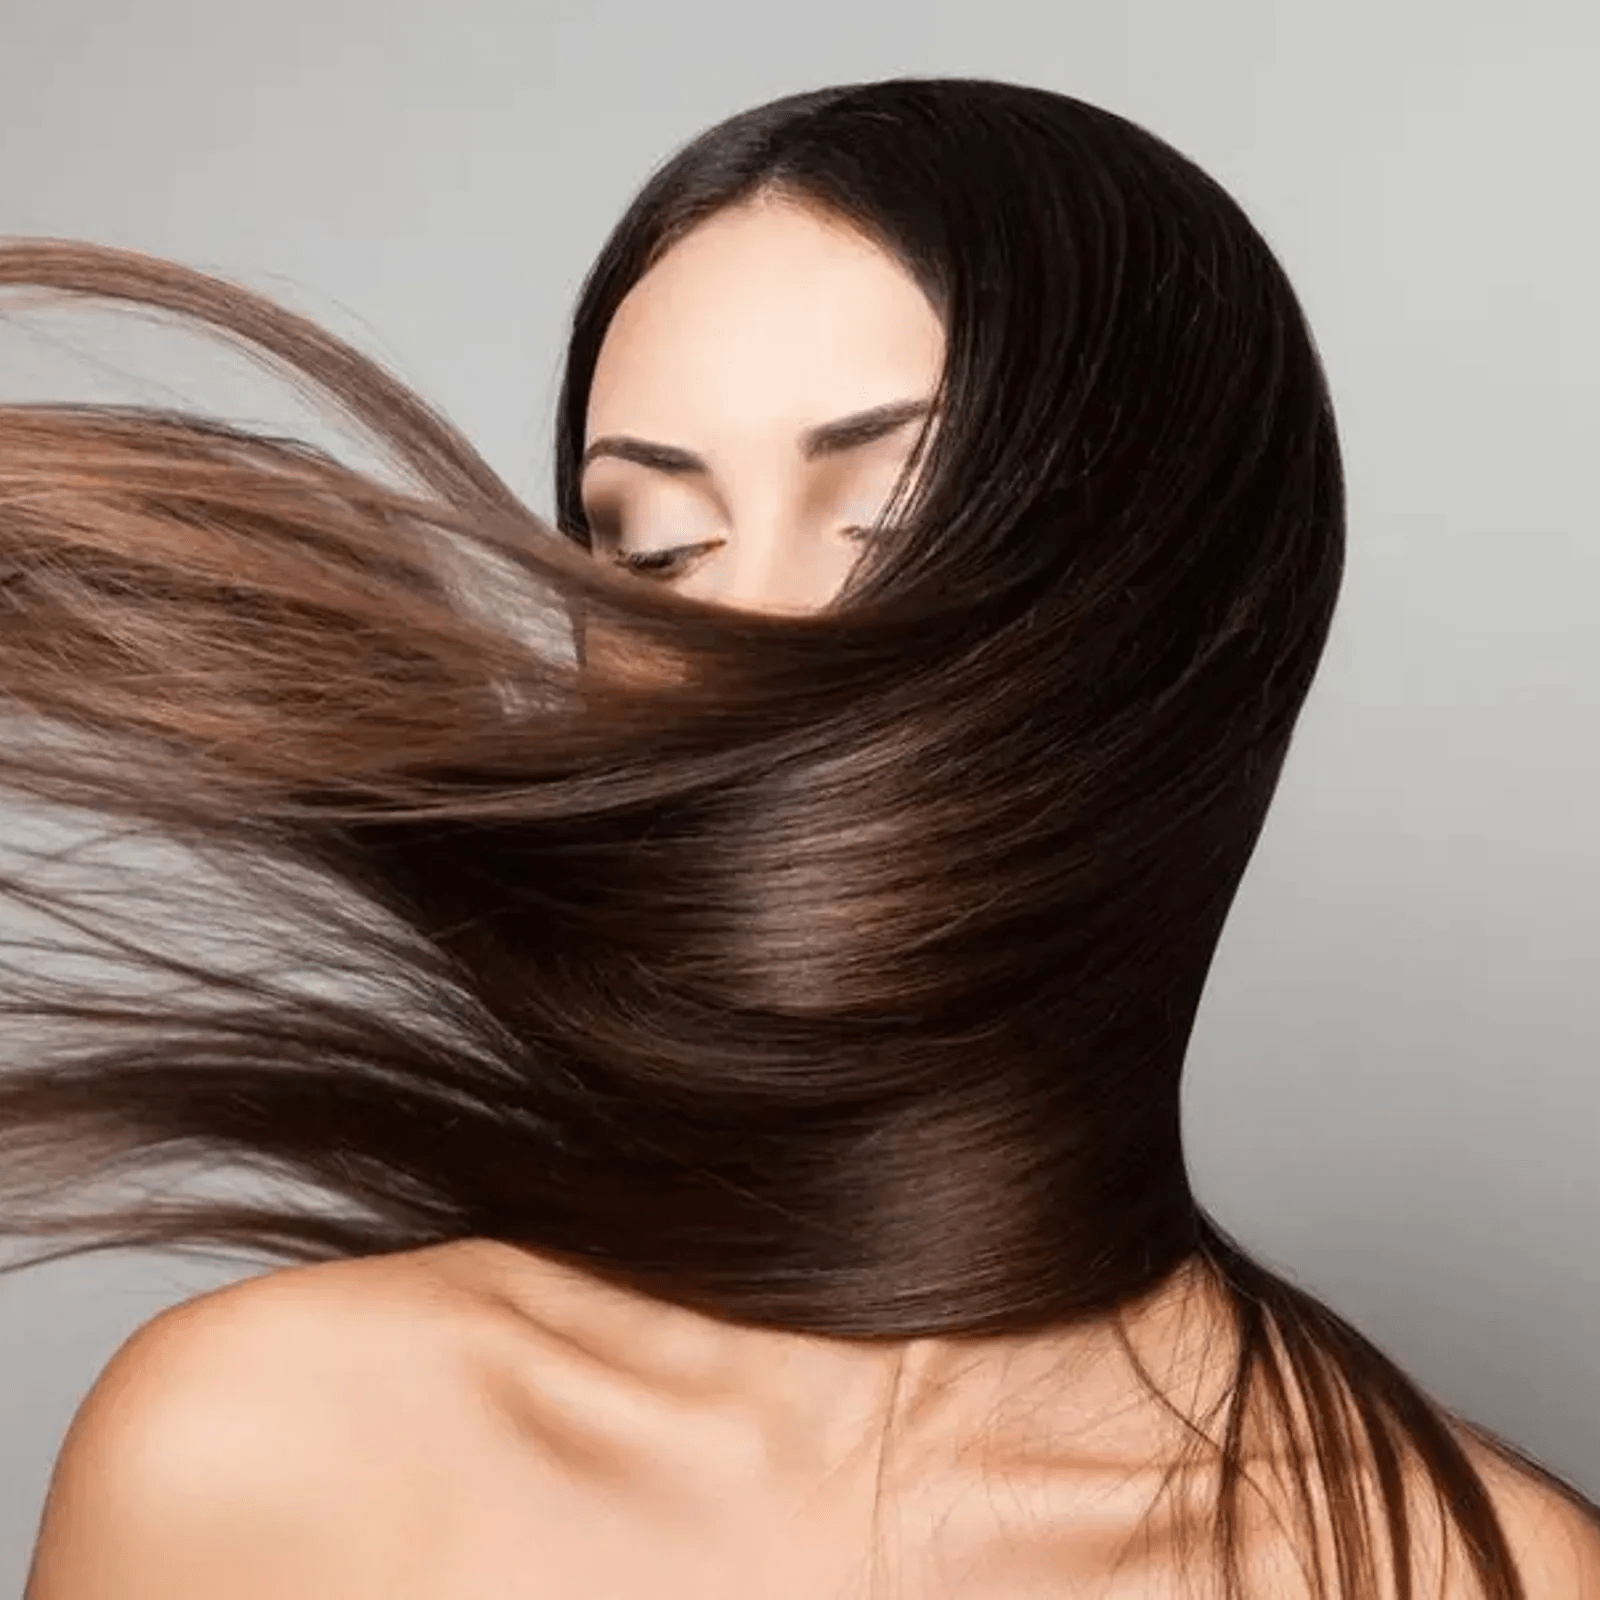 5 عادتی که مخفیانه به موهای شما آسیب می رساند